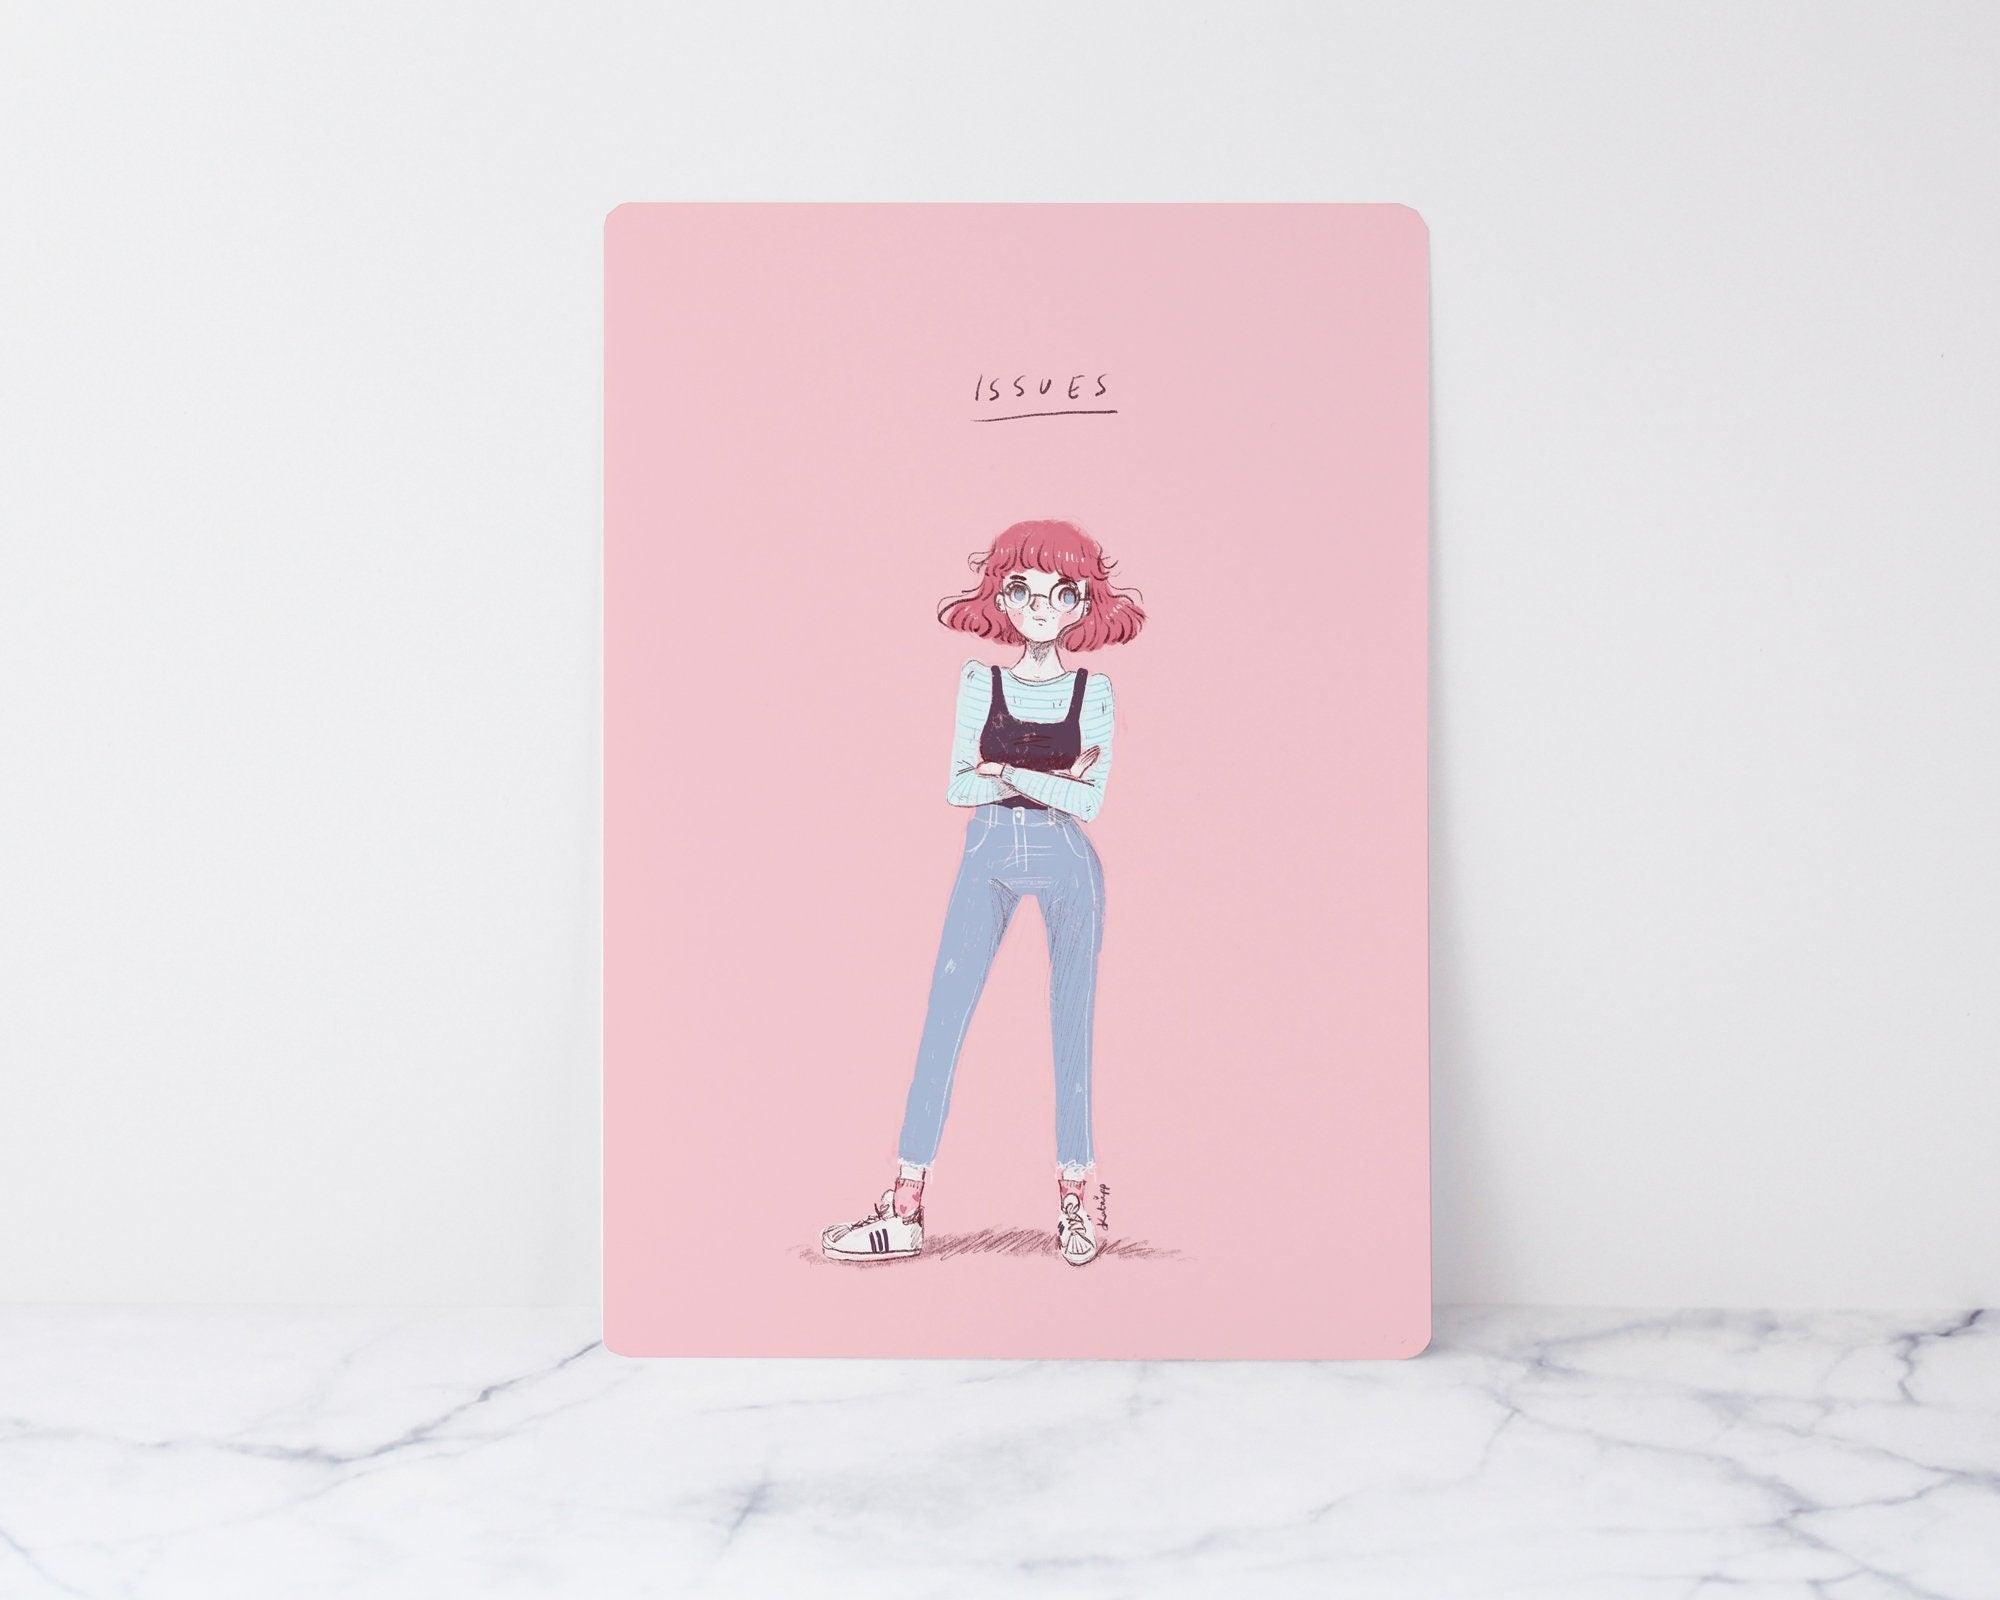 Issues Art Print ~ Kawaii Pink Art Print - Katnipp Illustrations